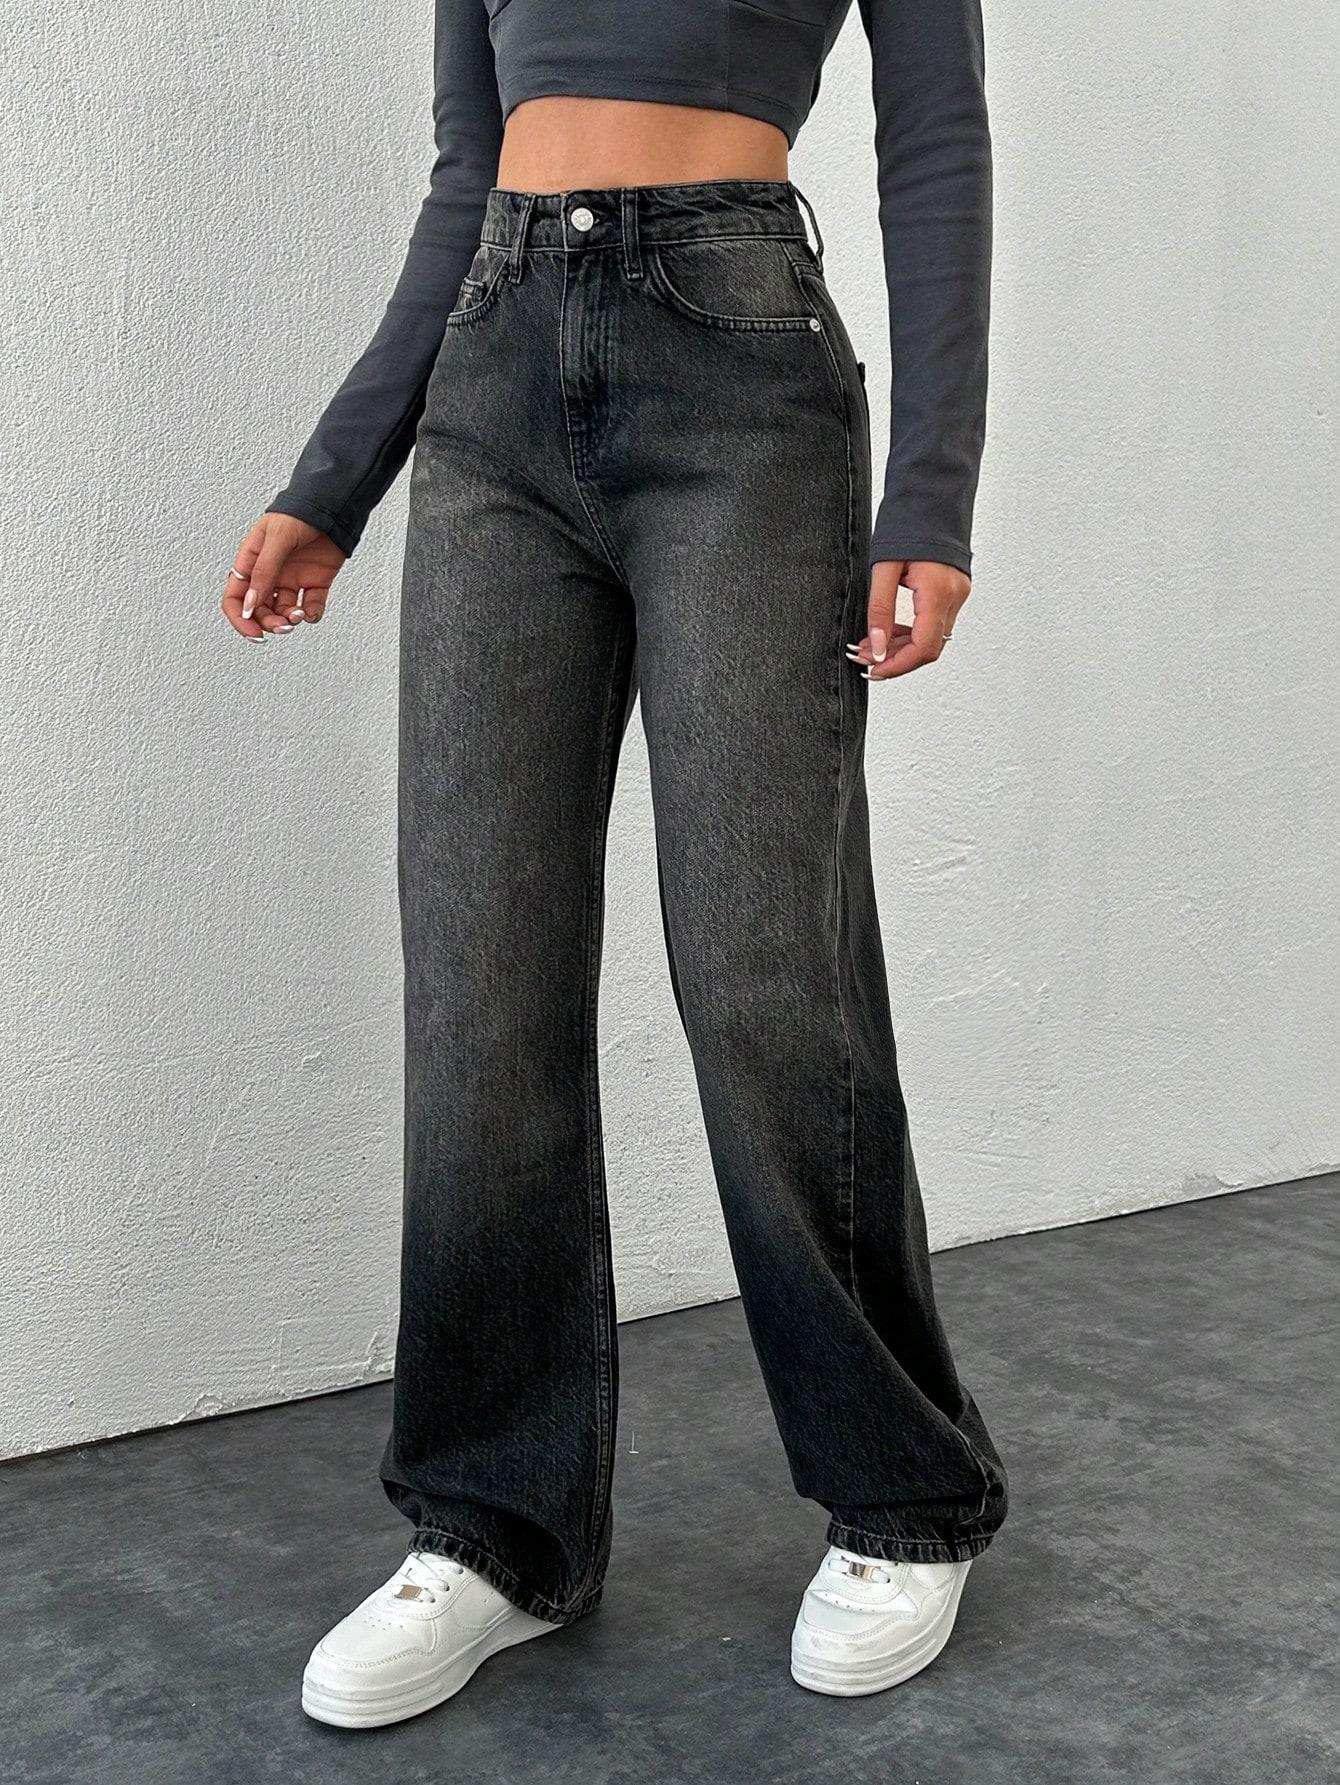 spodnie z wysokim stanem jeans szeroka nogawka kieszenie